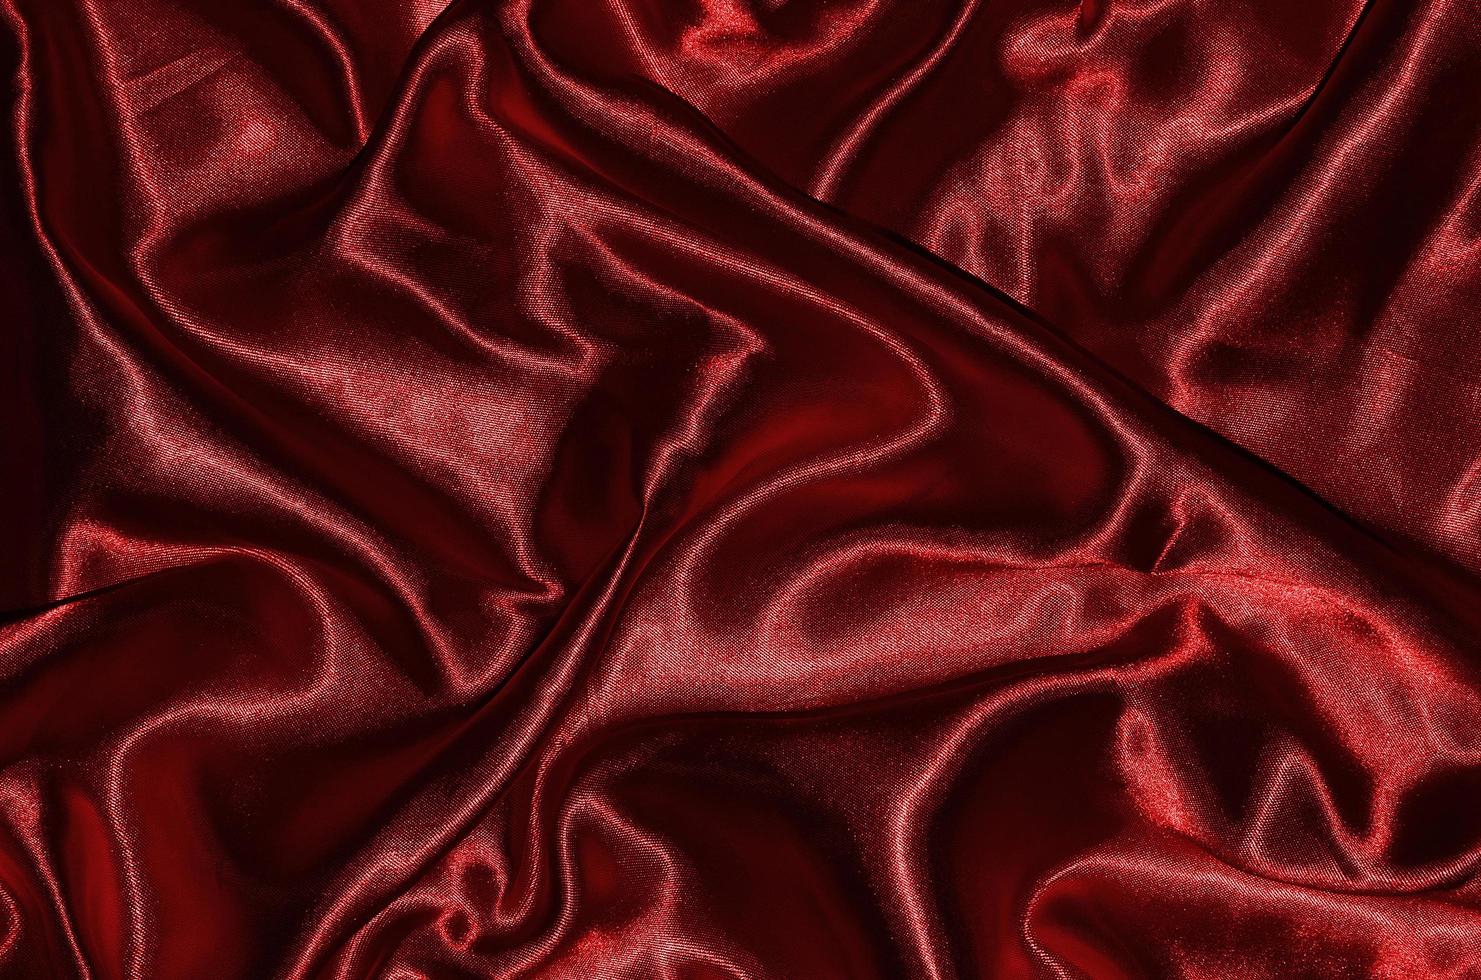 fond et papier peint en tissu rouge et textile à rayures photo